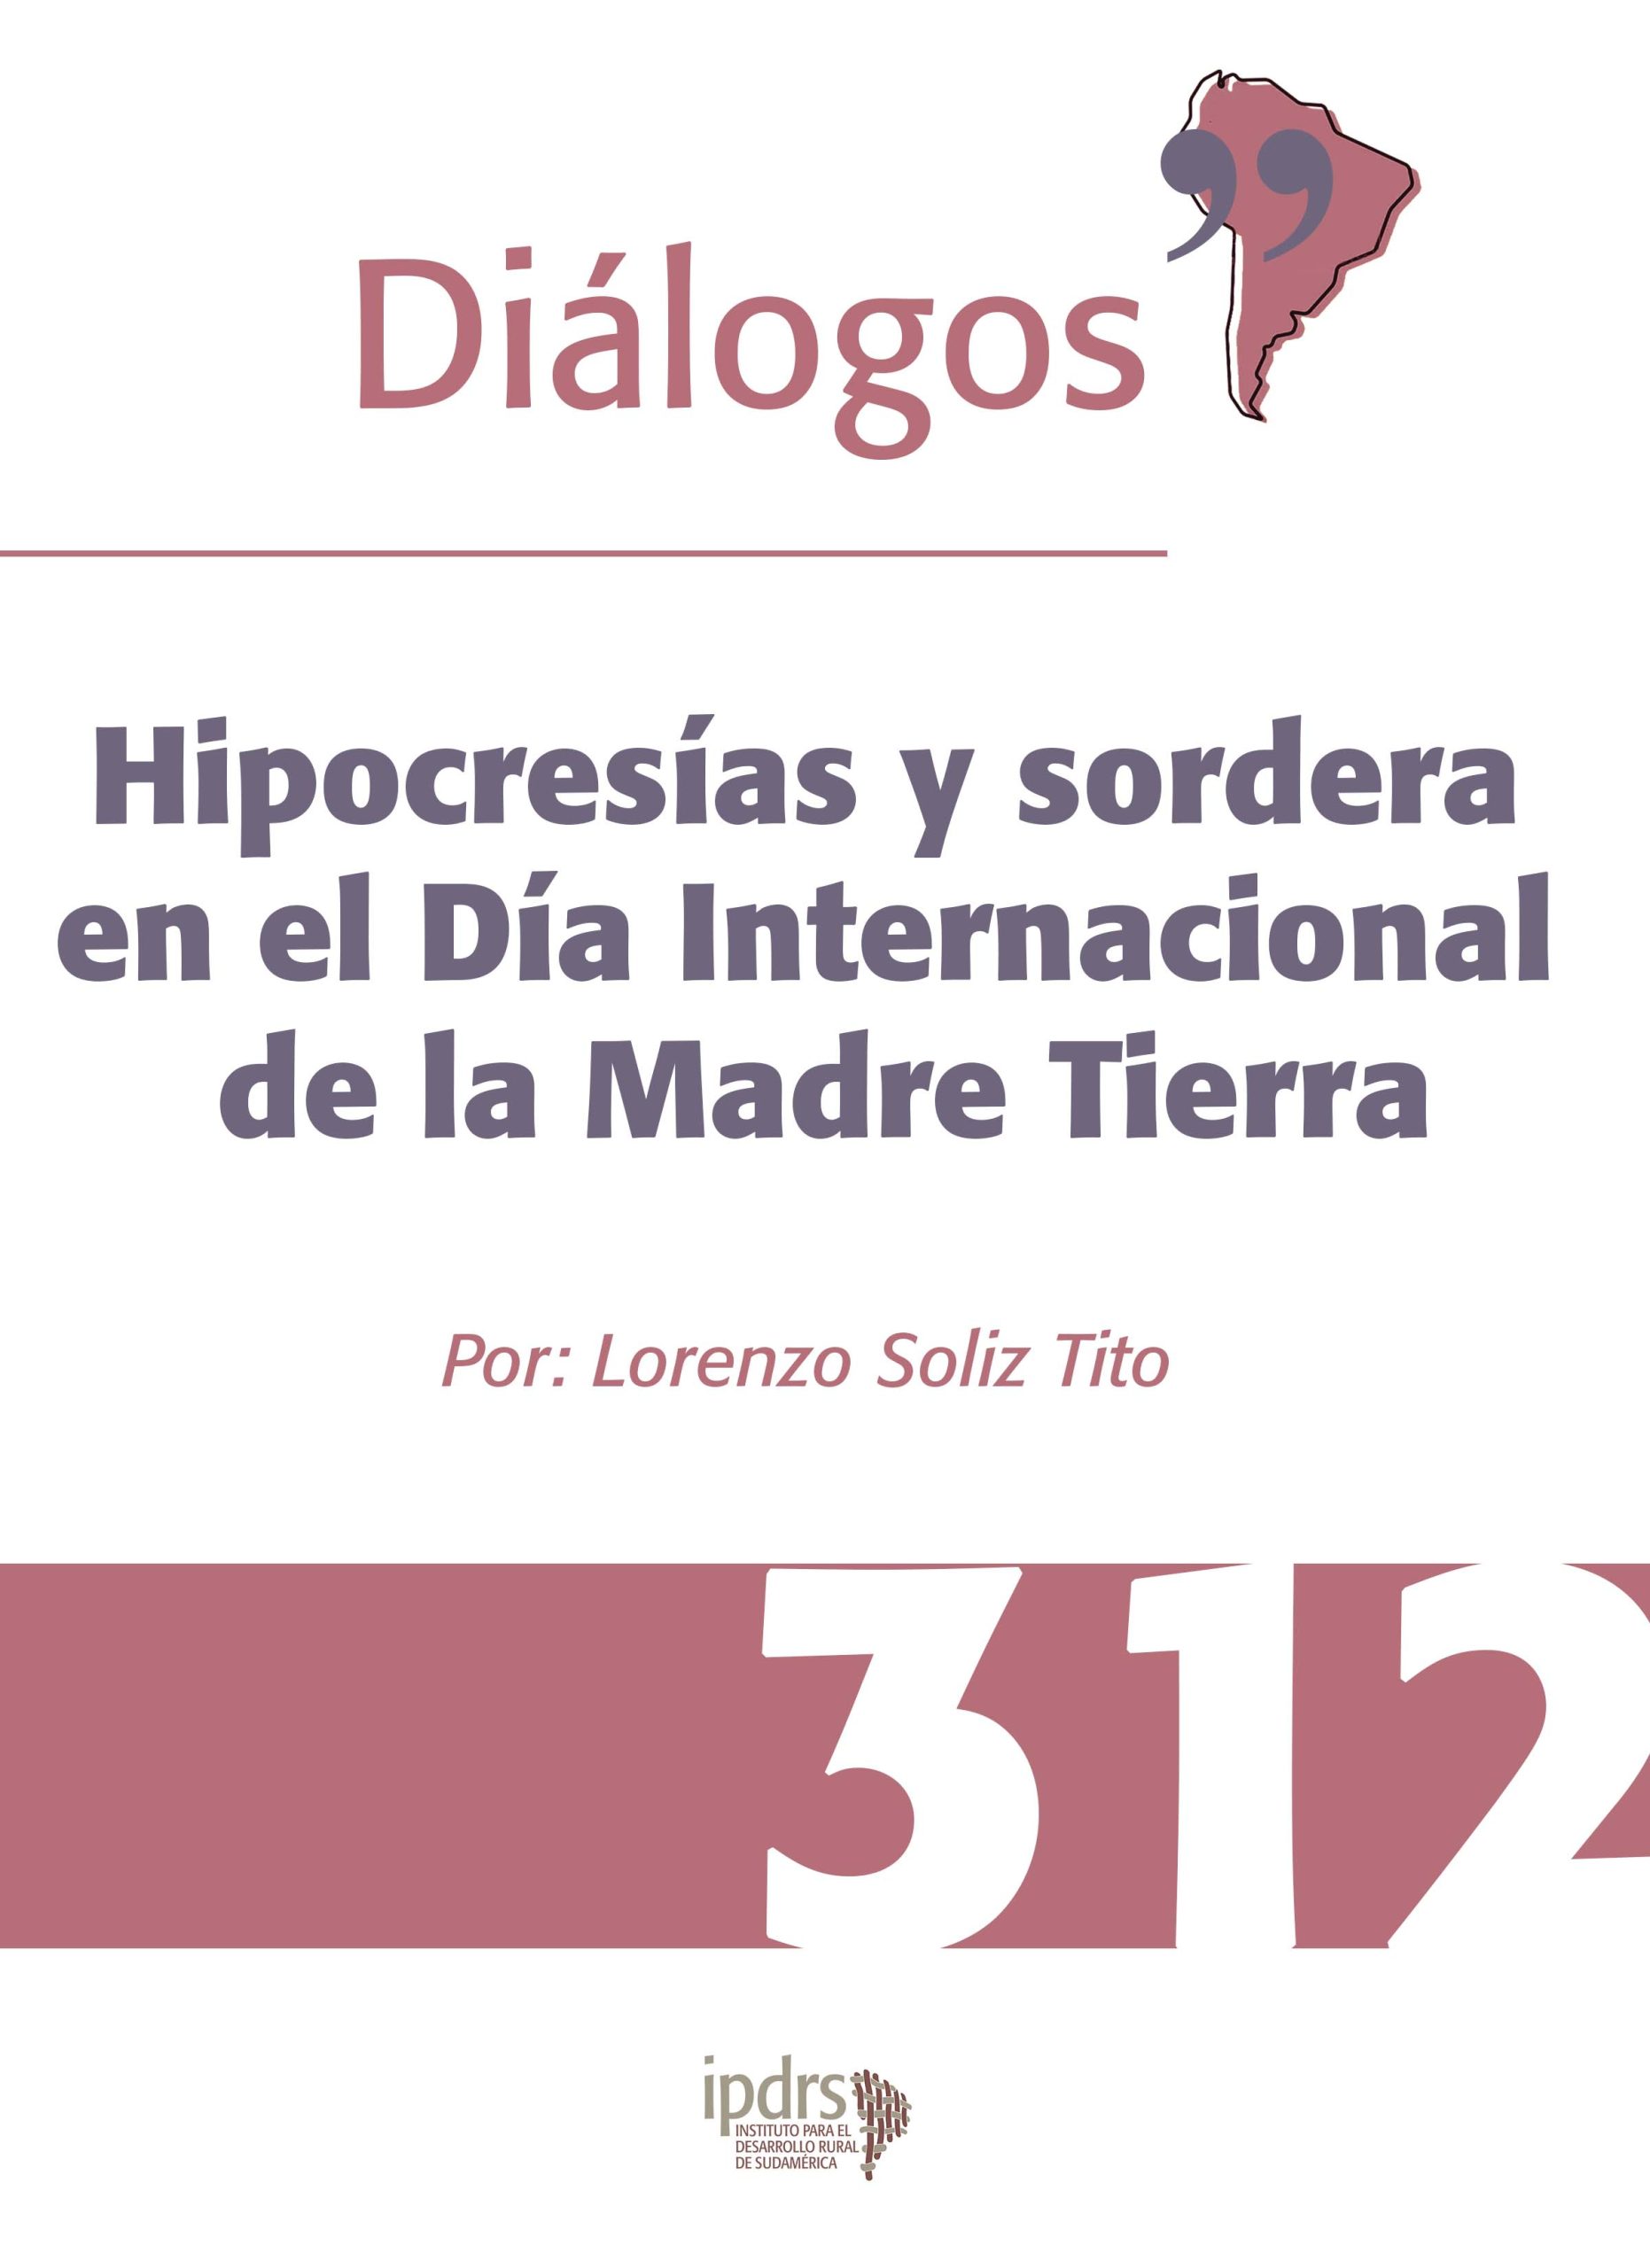 Diálogos 312: Hipocresías y sordera en el Día Internacional de la Madre Tierra